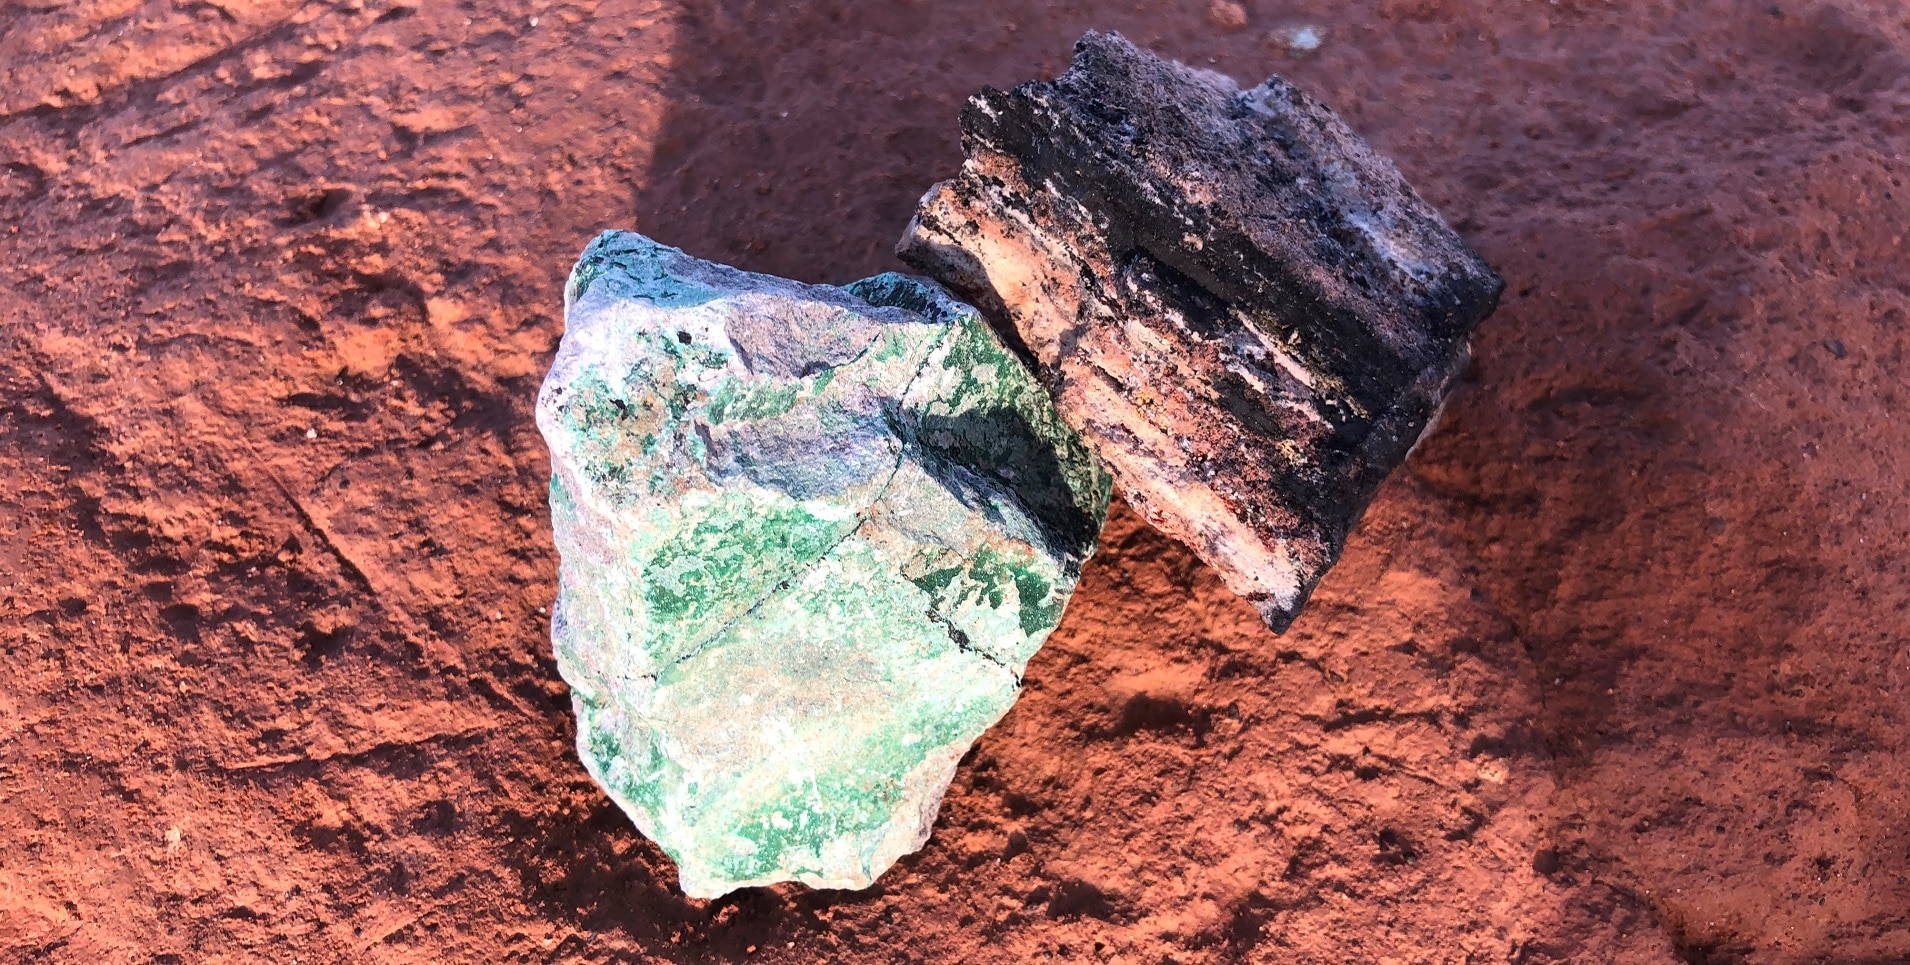  Un pezzo di cobalto, di colore nero, e un pezzo di rame, di colore verde, sono stati posati sul terreno ocra per illustrare l’attività di estrazione mineraria nella regione del Copperbelt, nella Repubblica democratica del Congo.